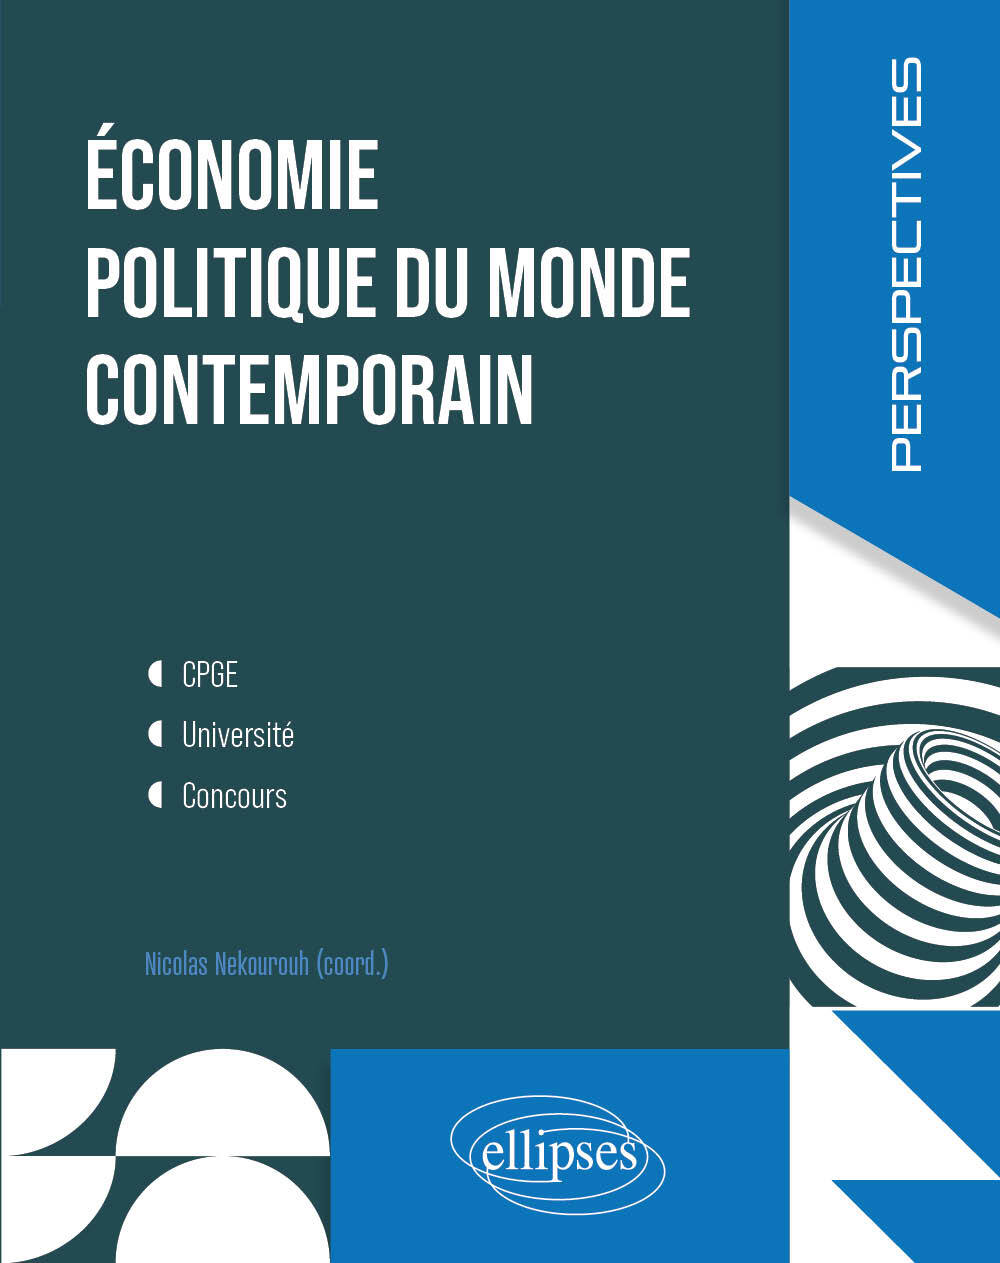 Knjiga Economie politique du monde contemporain. Badiei